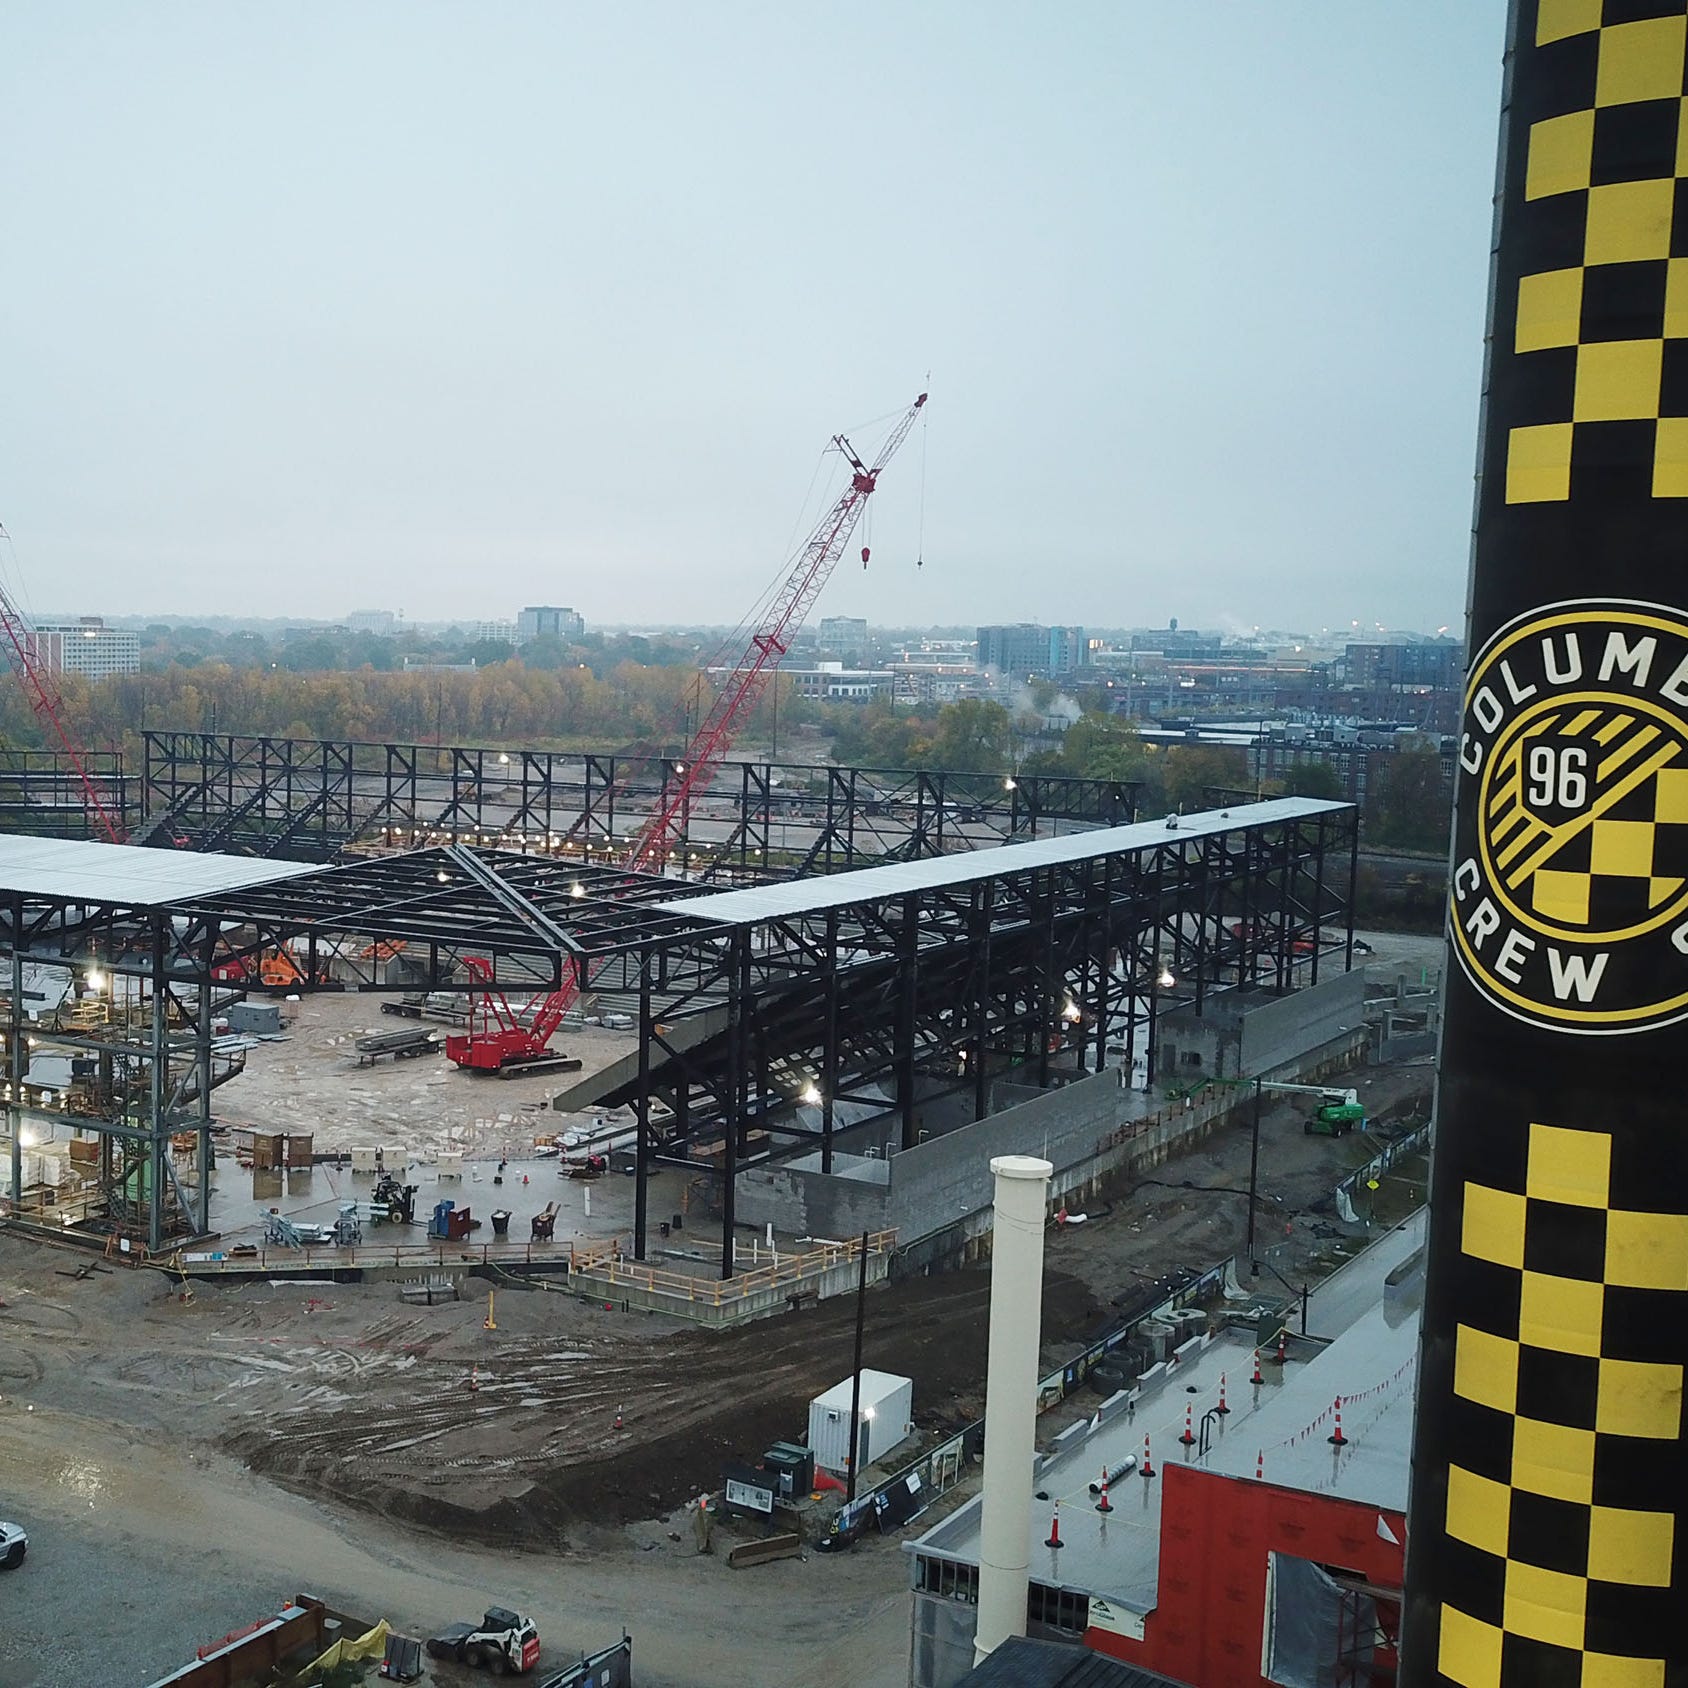 Columbus Crew Stadium under construction October 19, 2020